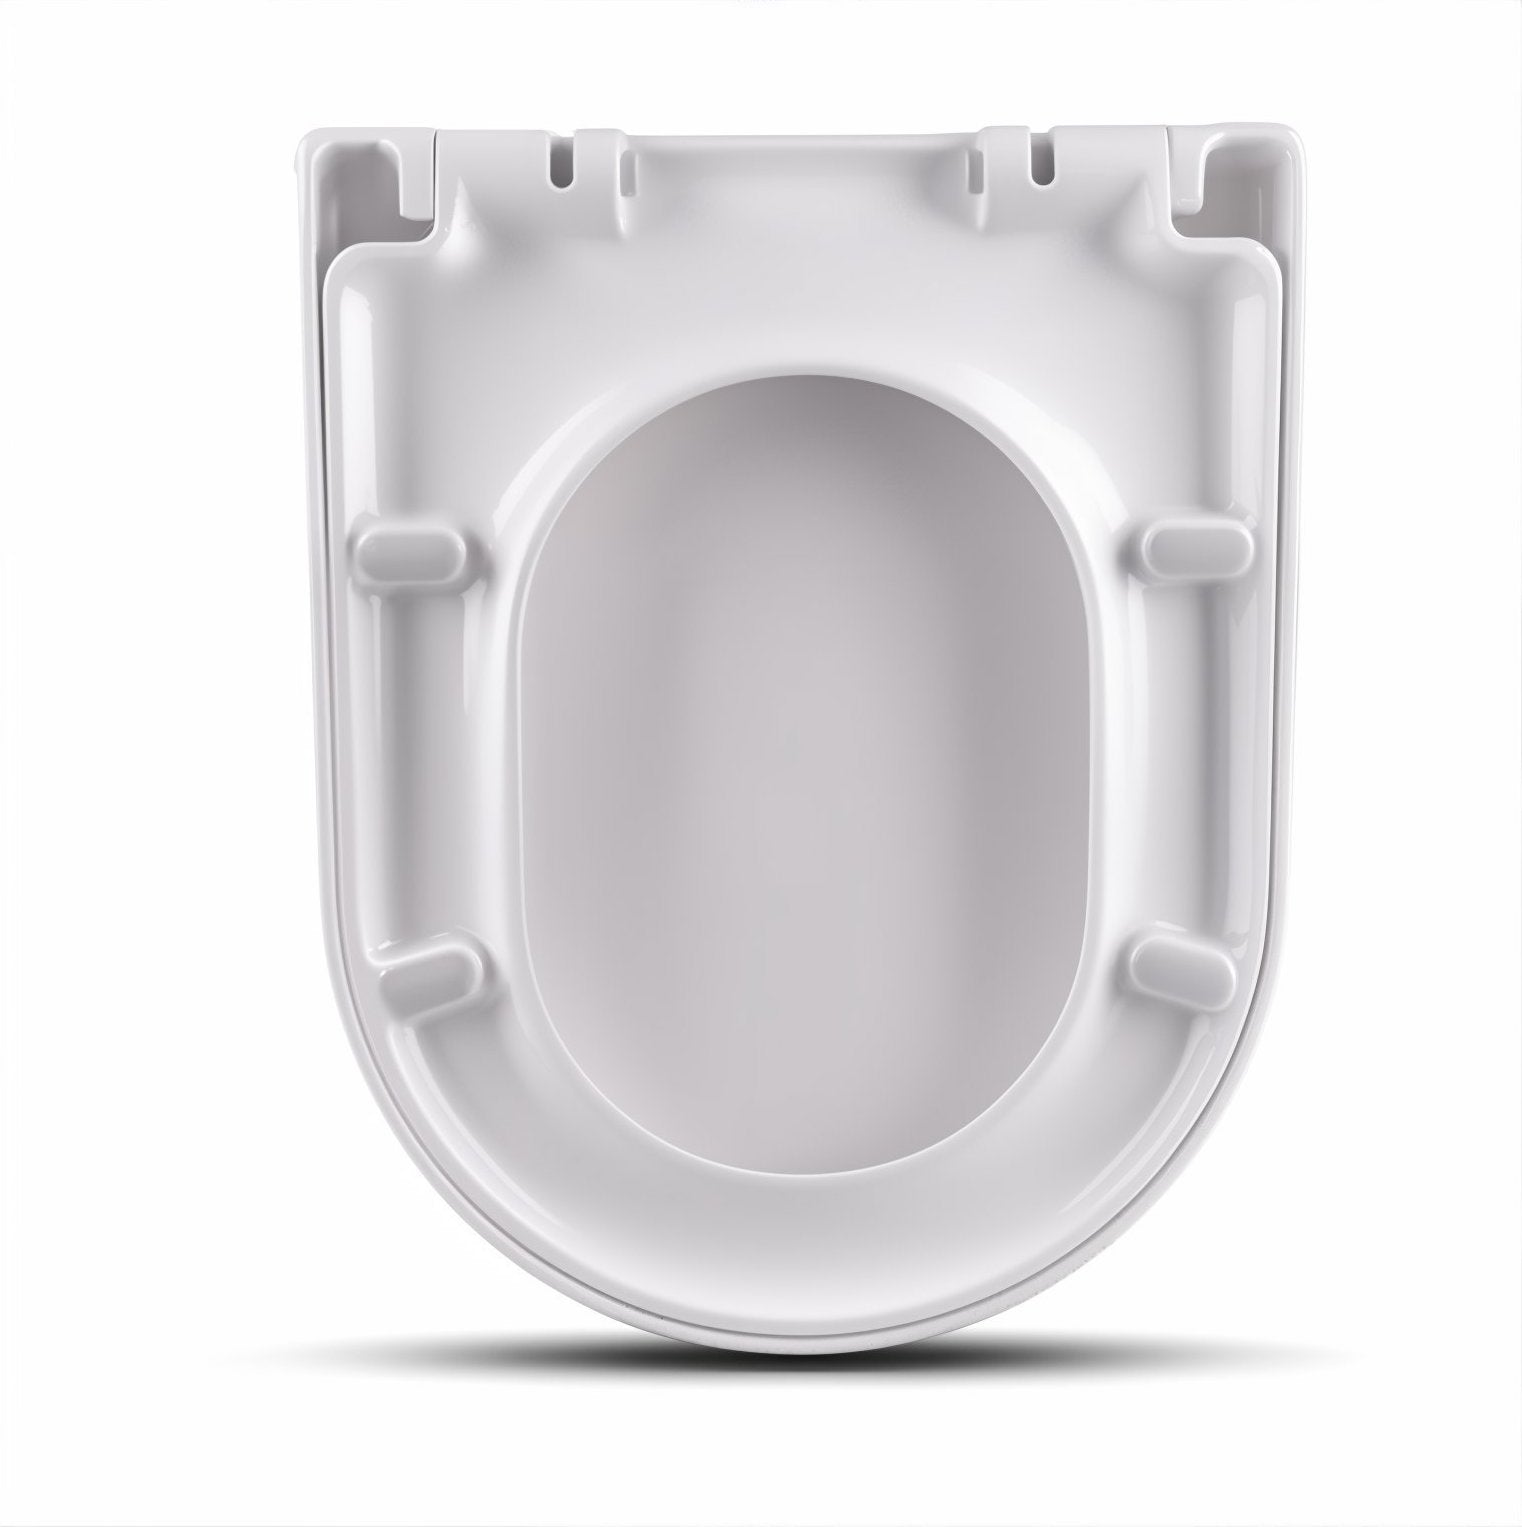 Stilform Soho 2.0 WC Sitz D-Form mit Absenkautomatik in Weiss (Duroplast)